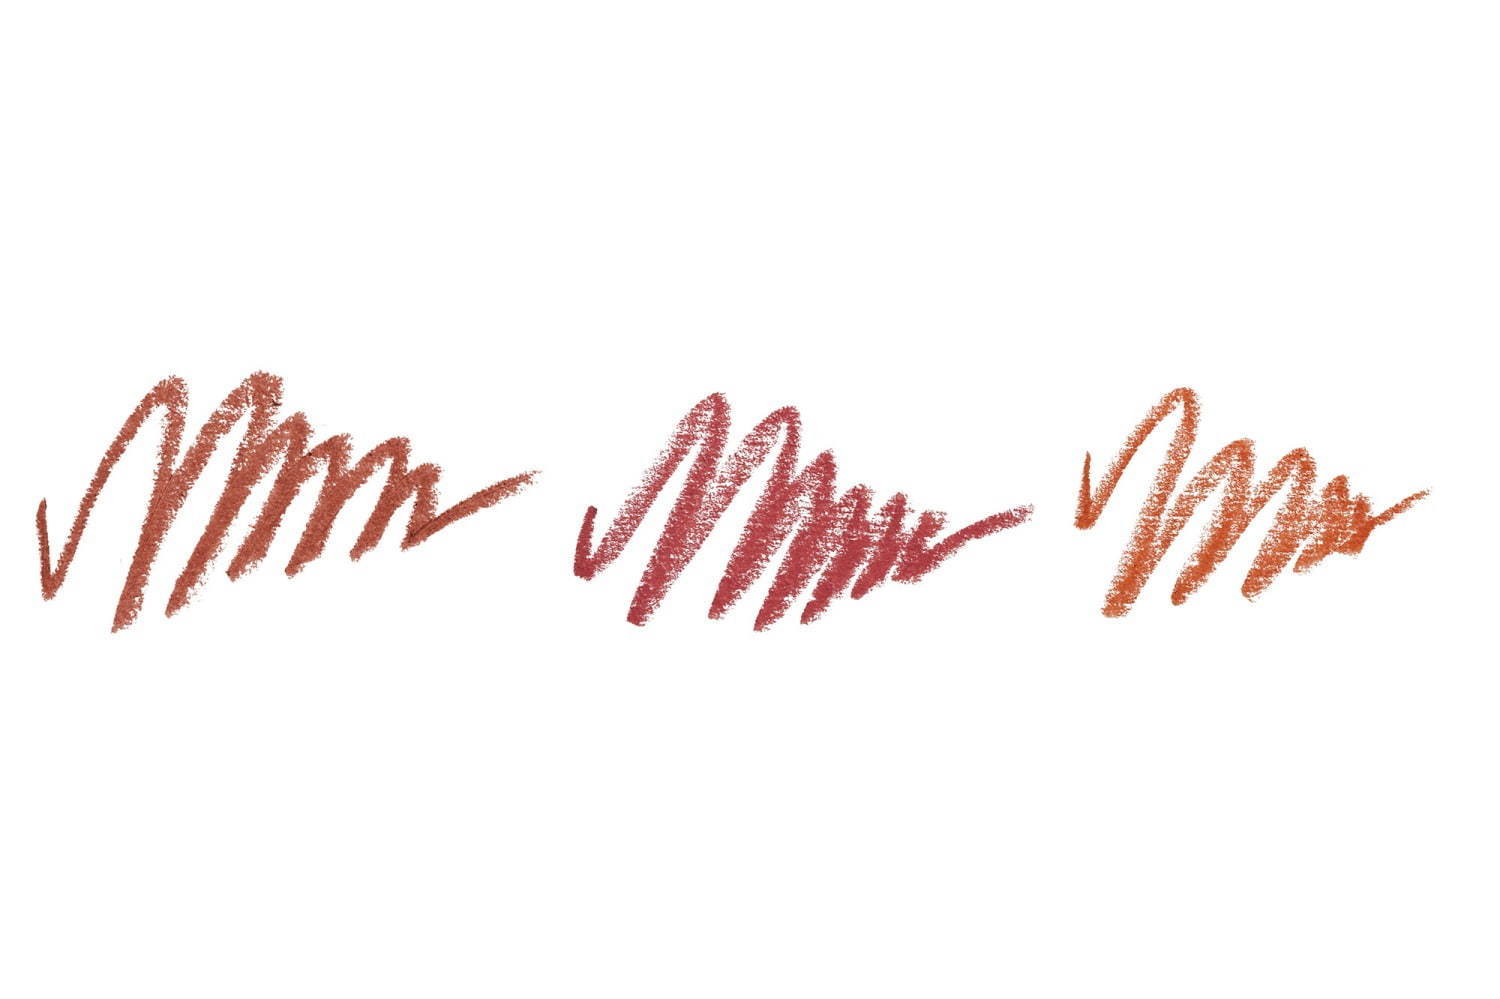 左から) ミネラルクレヨンルージュⅠ フィグブラウン、ベロアレッド、ヌードテラコッタ
※ヌードテラコッタのみ限定色。